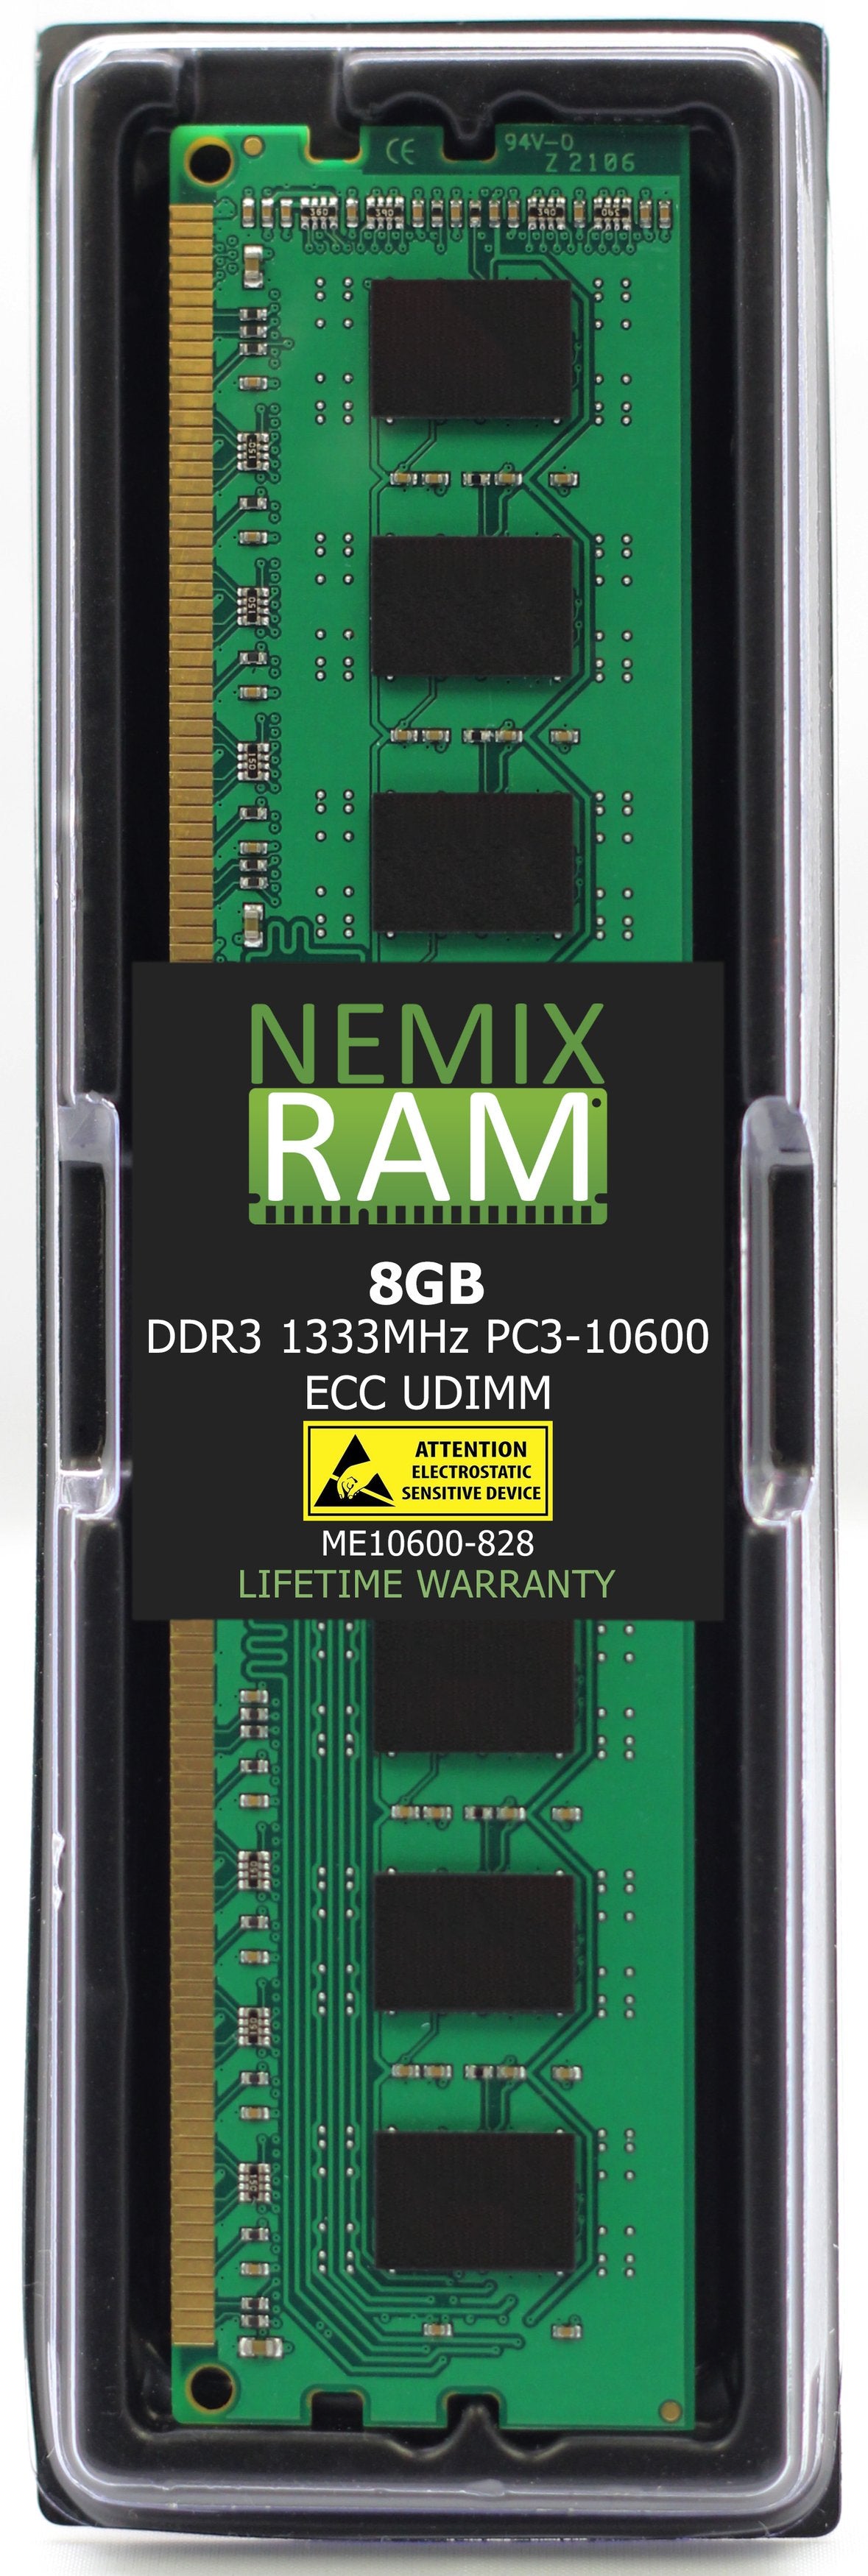 8GB DDR3 1333MHZ PC3-10600 ECC UDIMM Compatible with Supermicro MEM-DR380L-HL01-EU13